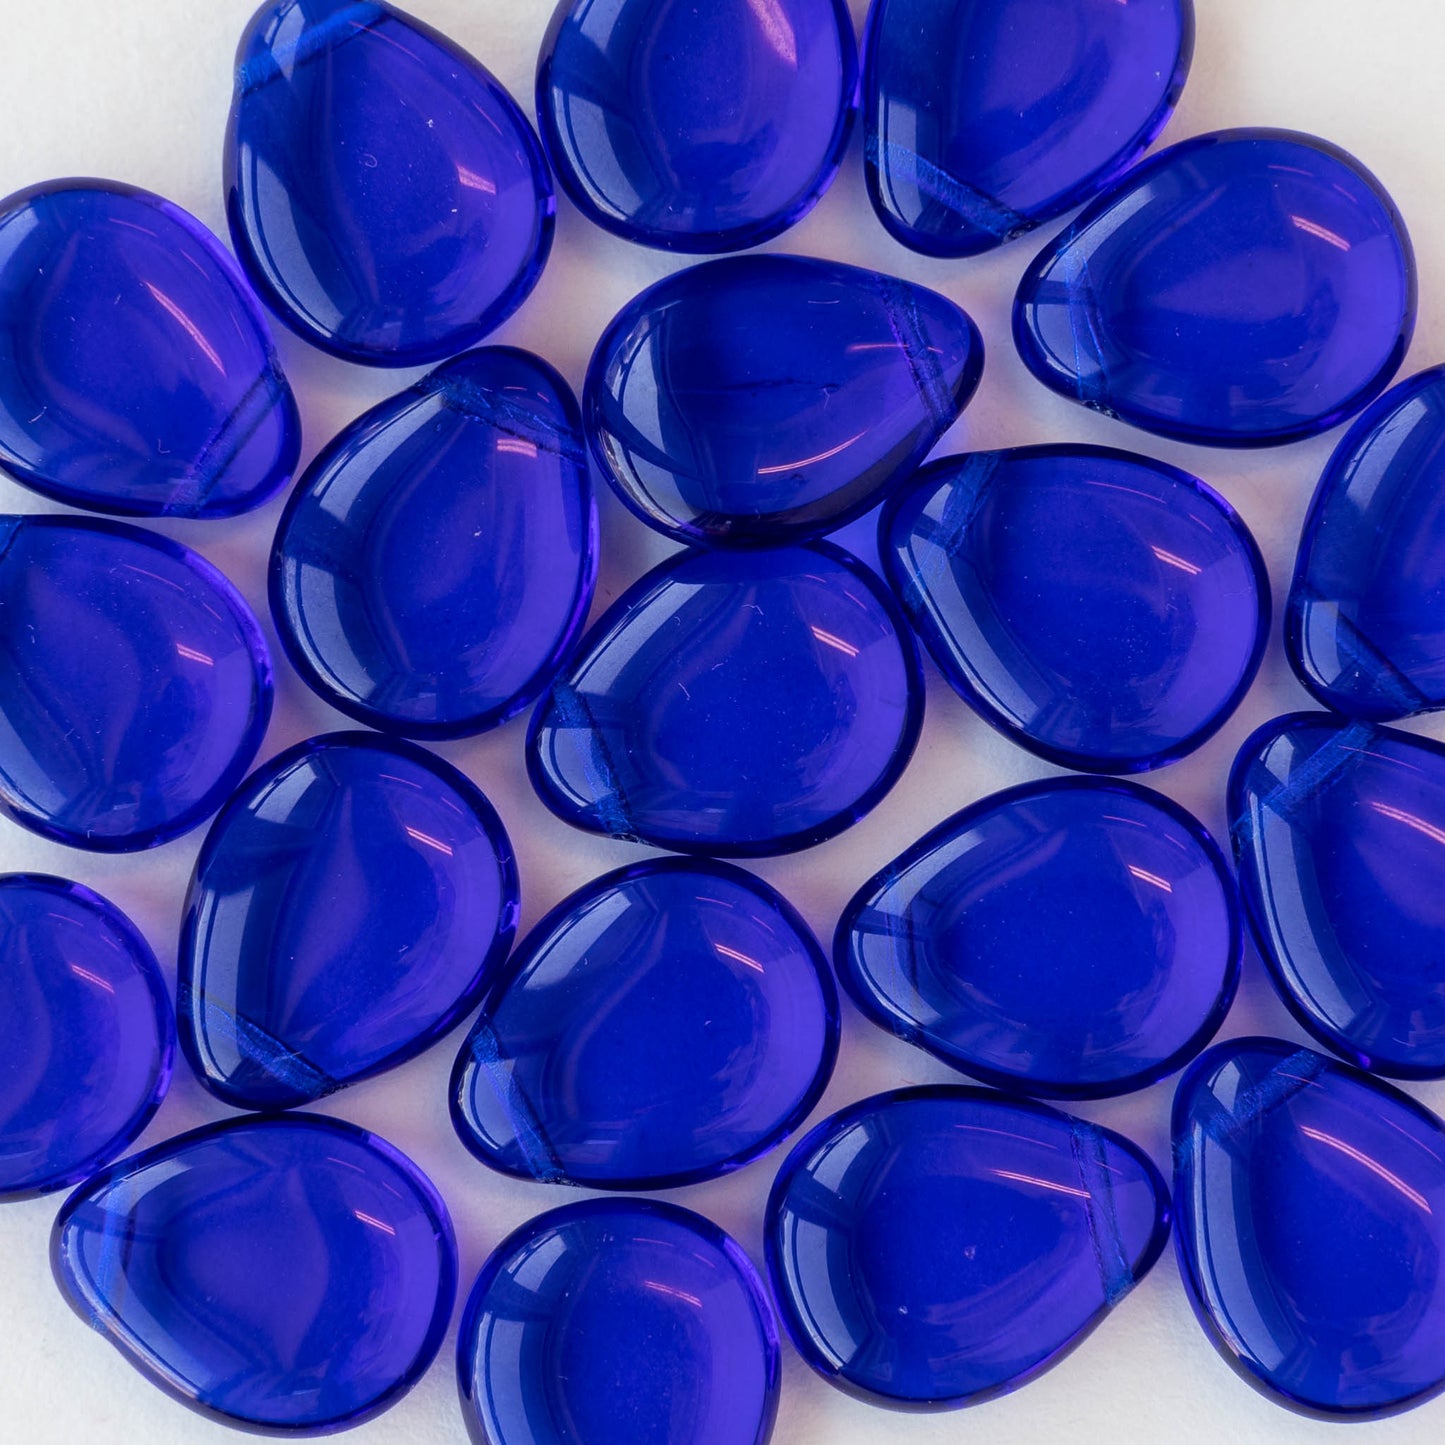 12x16mm Flat Glass Teardrop Beads - Cobalt Blue - 20 Beads